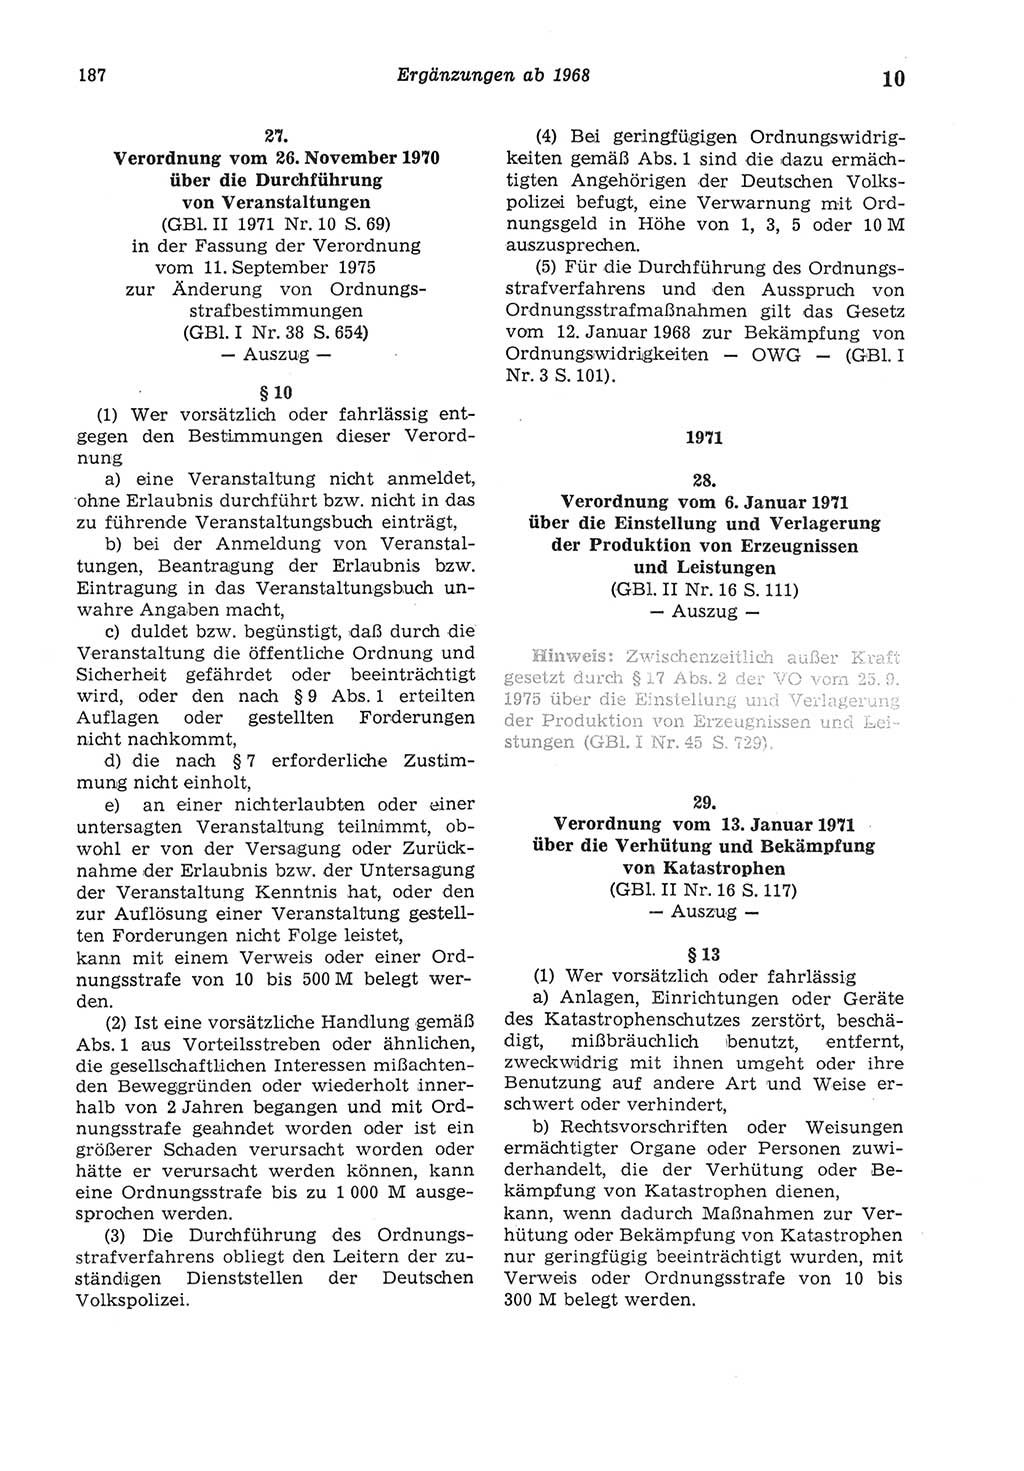 Strafgesetzbuch (StGB) der Deutschen Demokratischen Republik (DDR) und angrenzende Gesetze und Bestimmungen 1975, Seite 187 (StGB DDR Ges. Best. 1975, S. 187)